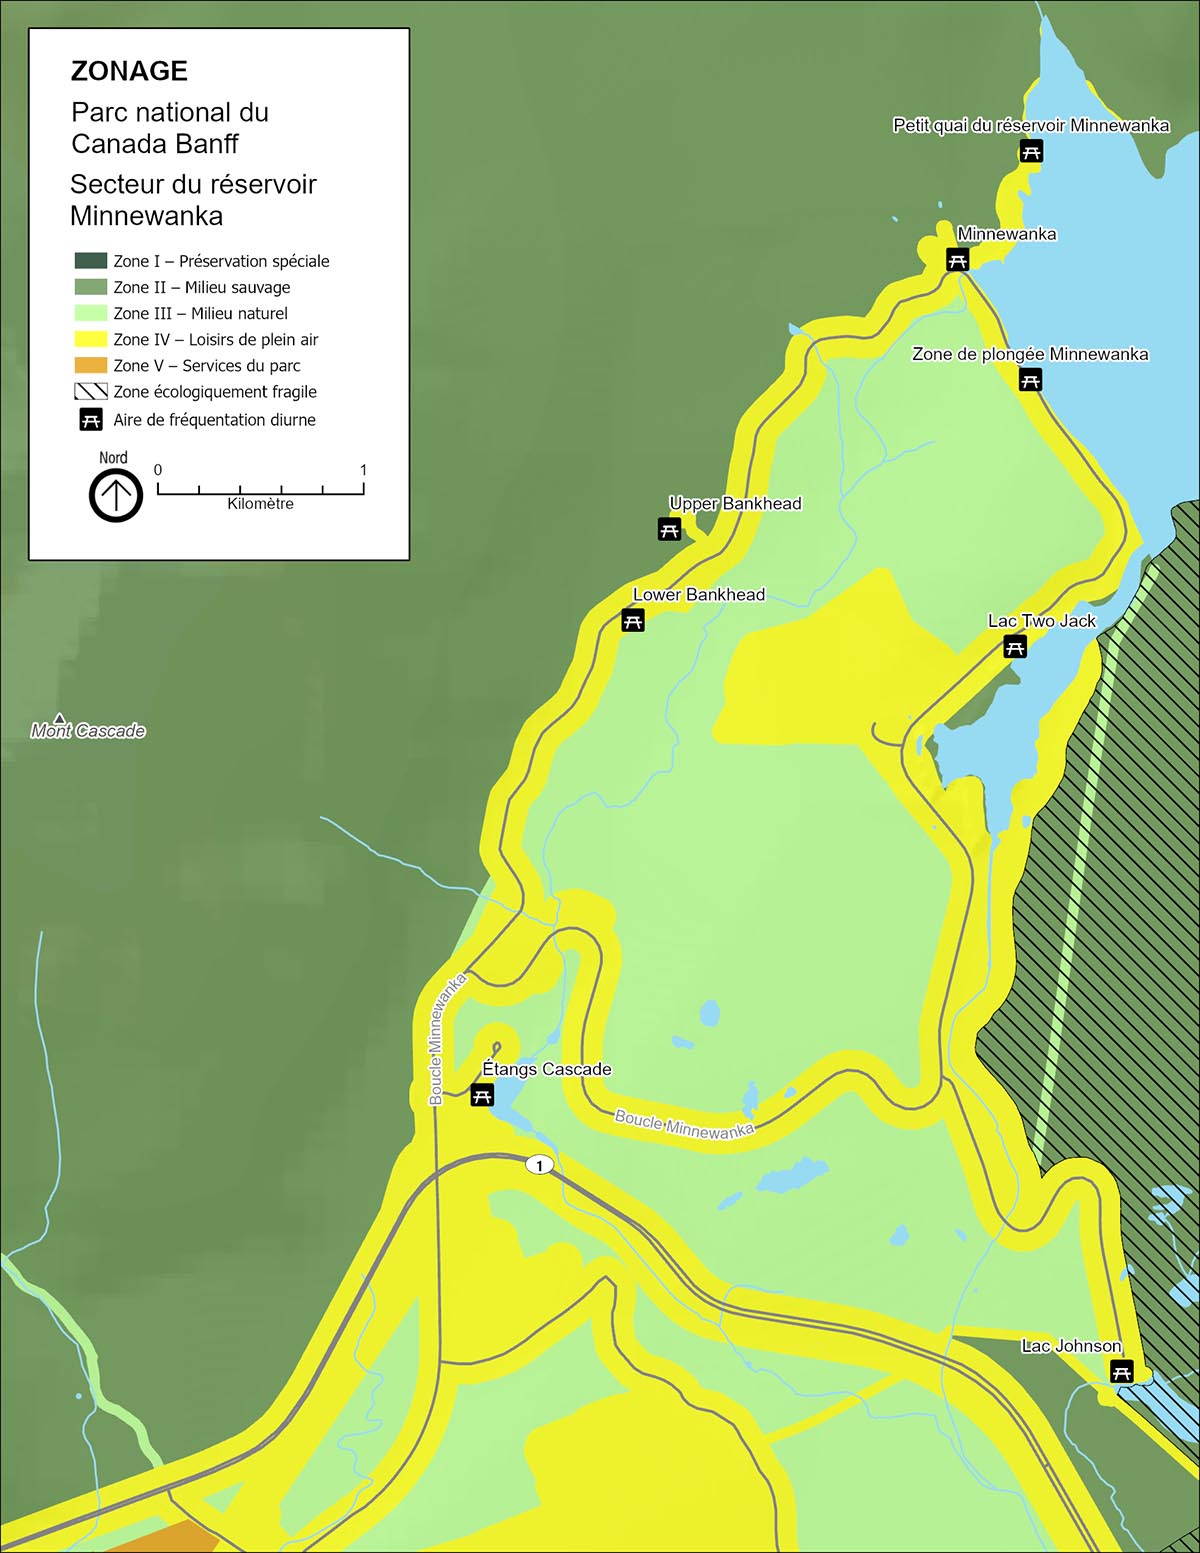  Carte 7 : Zonage du secteur du réservoir Minnewanka 